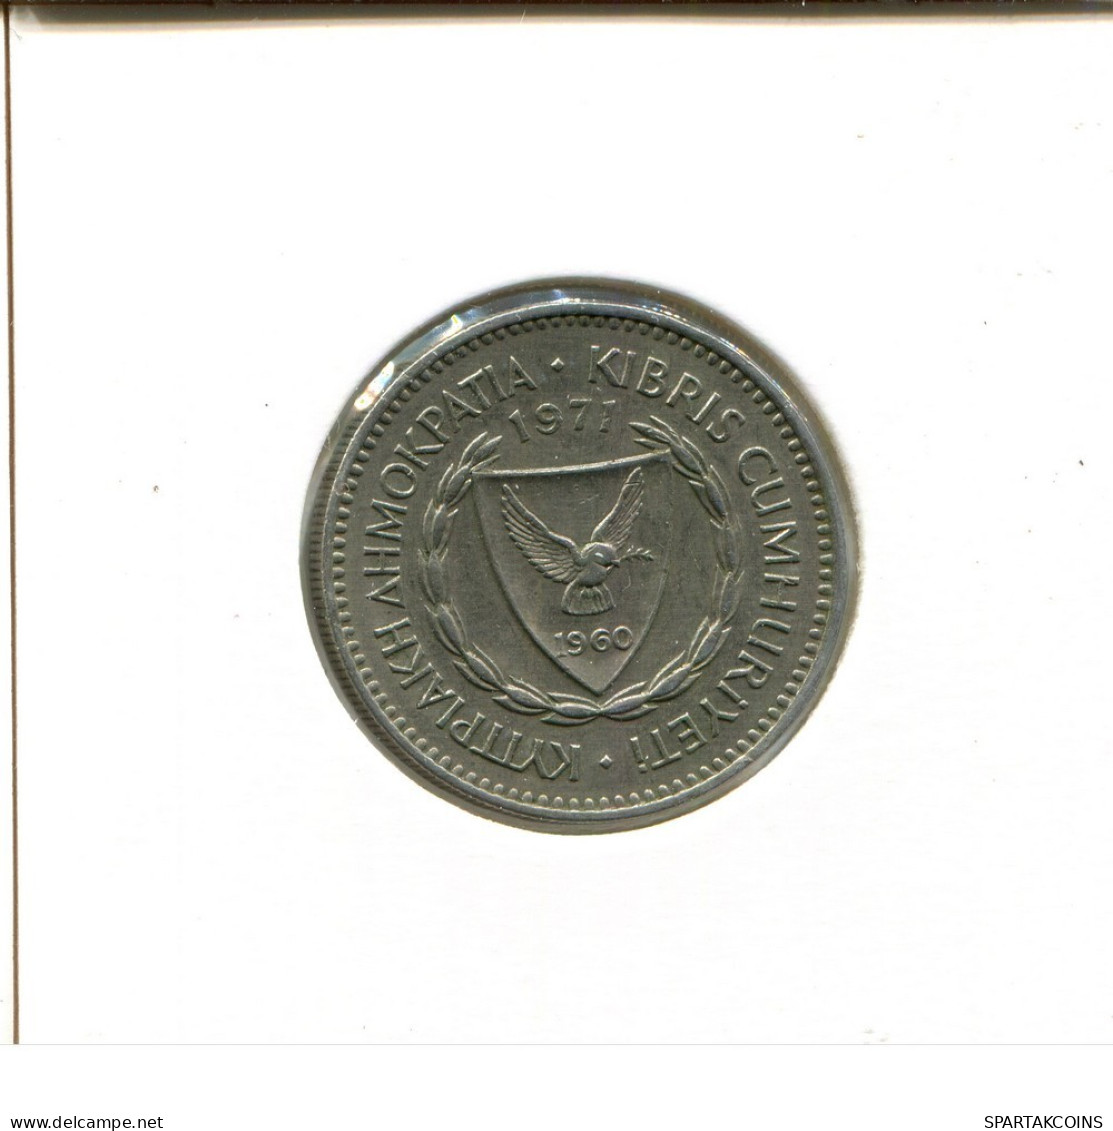 50 MILS 1971 ZYPERN CYPRUS Münze #AZ888.D.A - Zypern